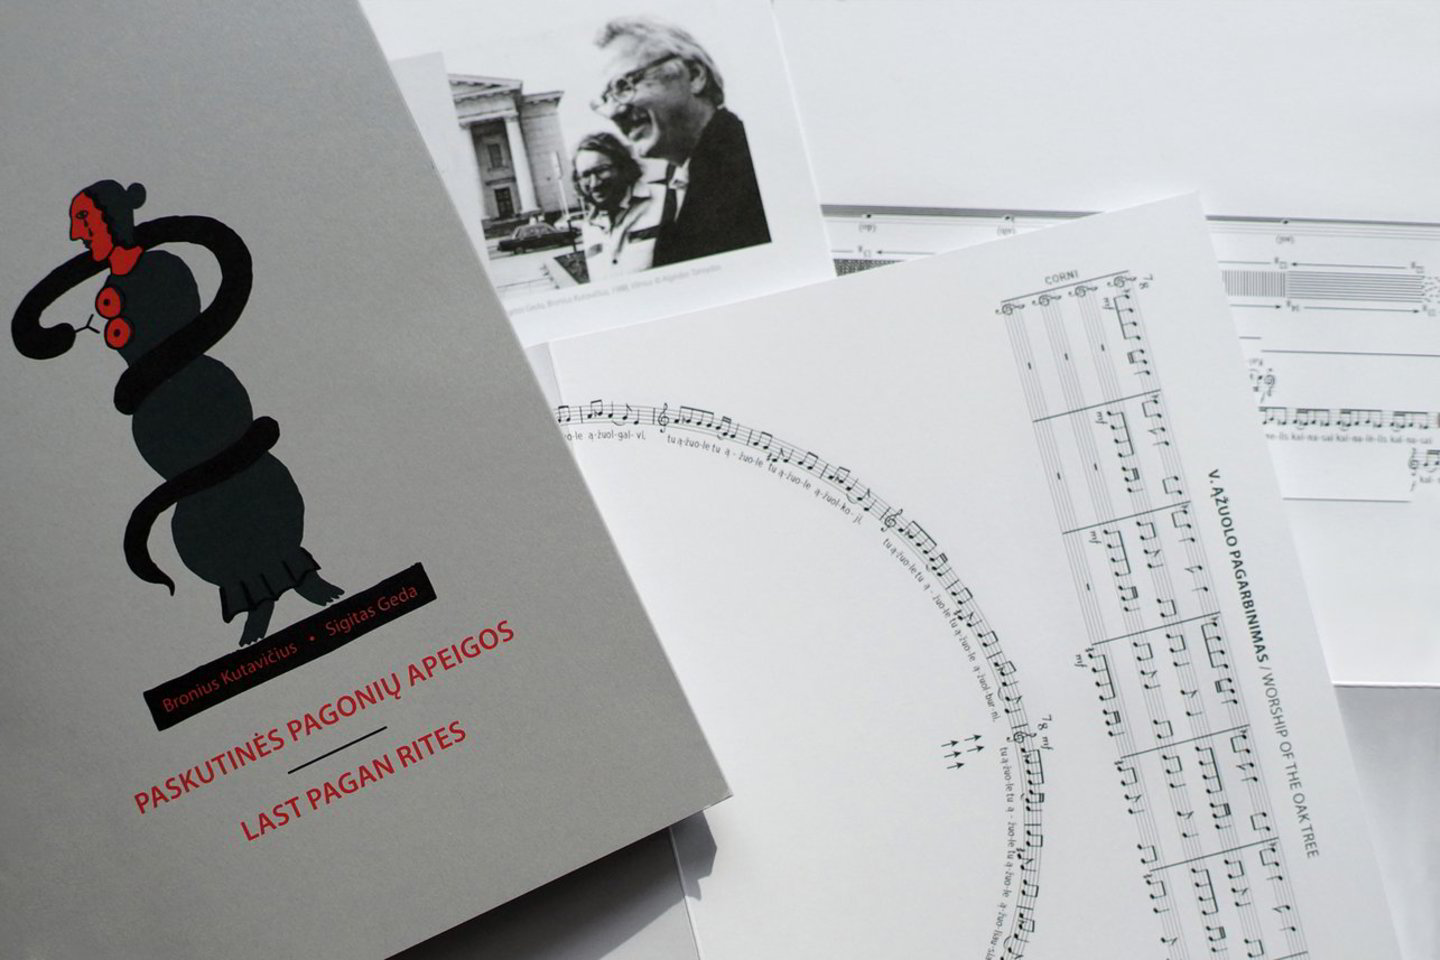 M.P.Vilučio šilkografijos darbu puoštas kolekcinis leidinys dedikuojamas Lietuvos valstybės atkūrimo 100-mečiui.